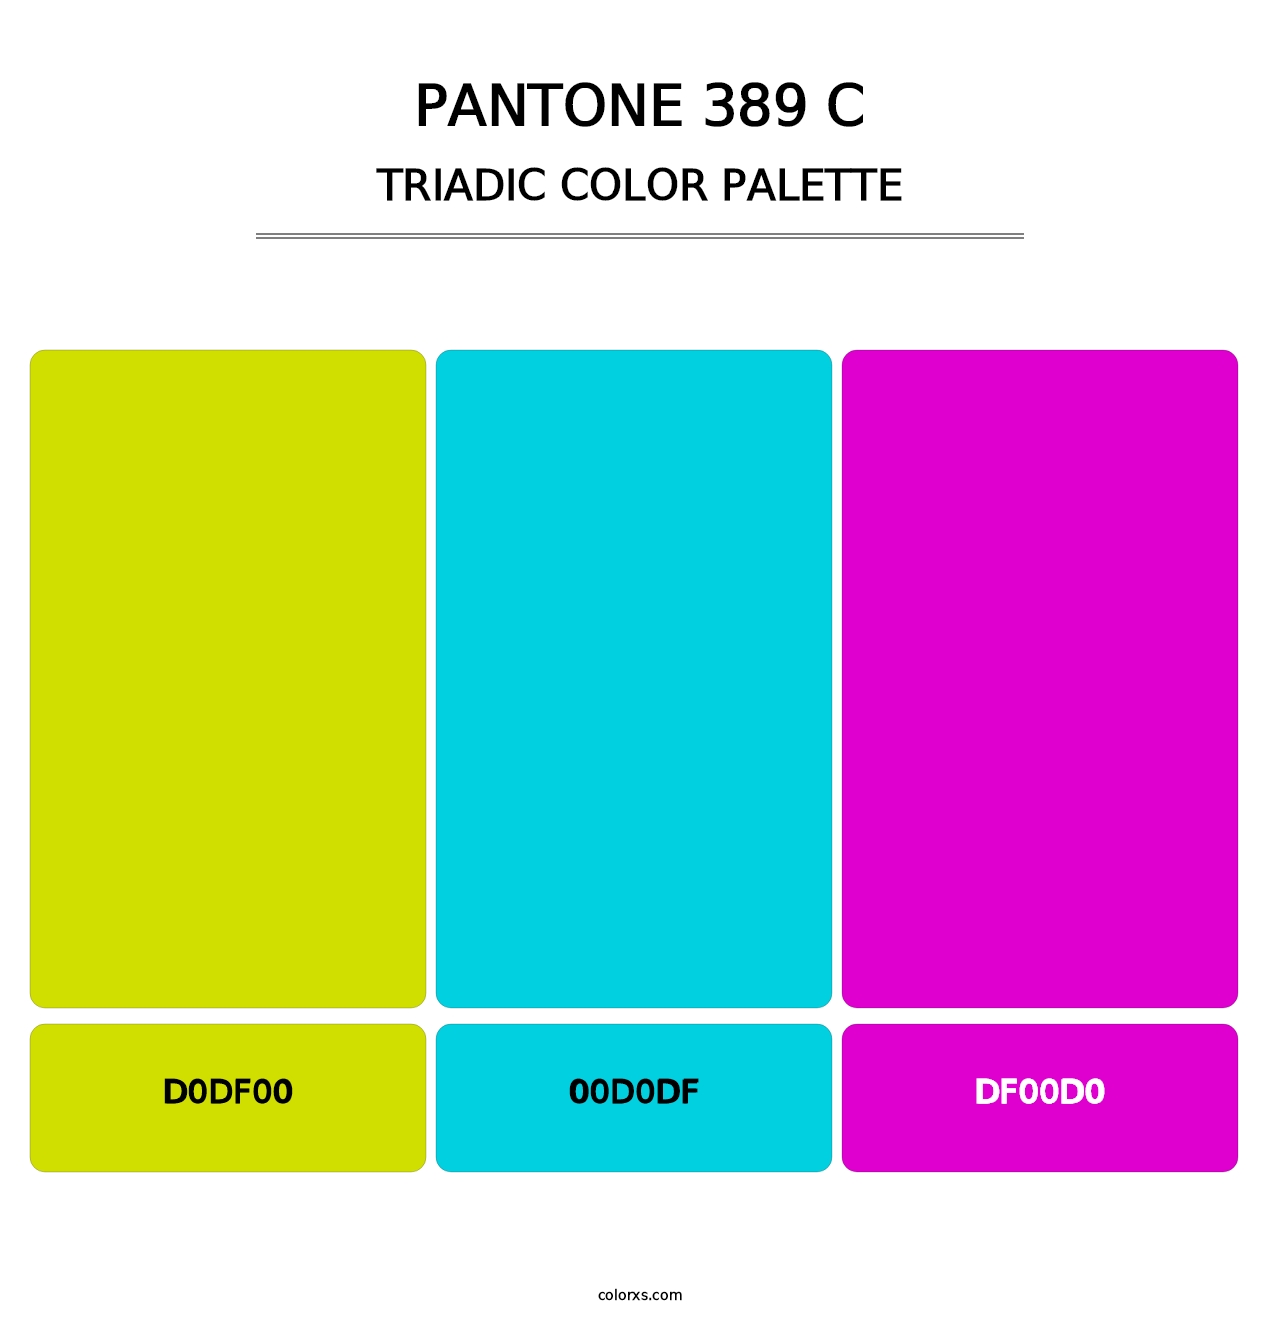 PANTONE 389 C - Triadic Color Palette